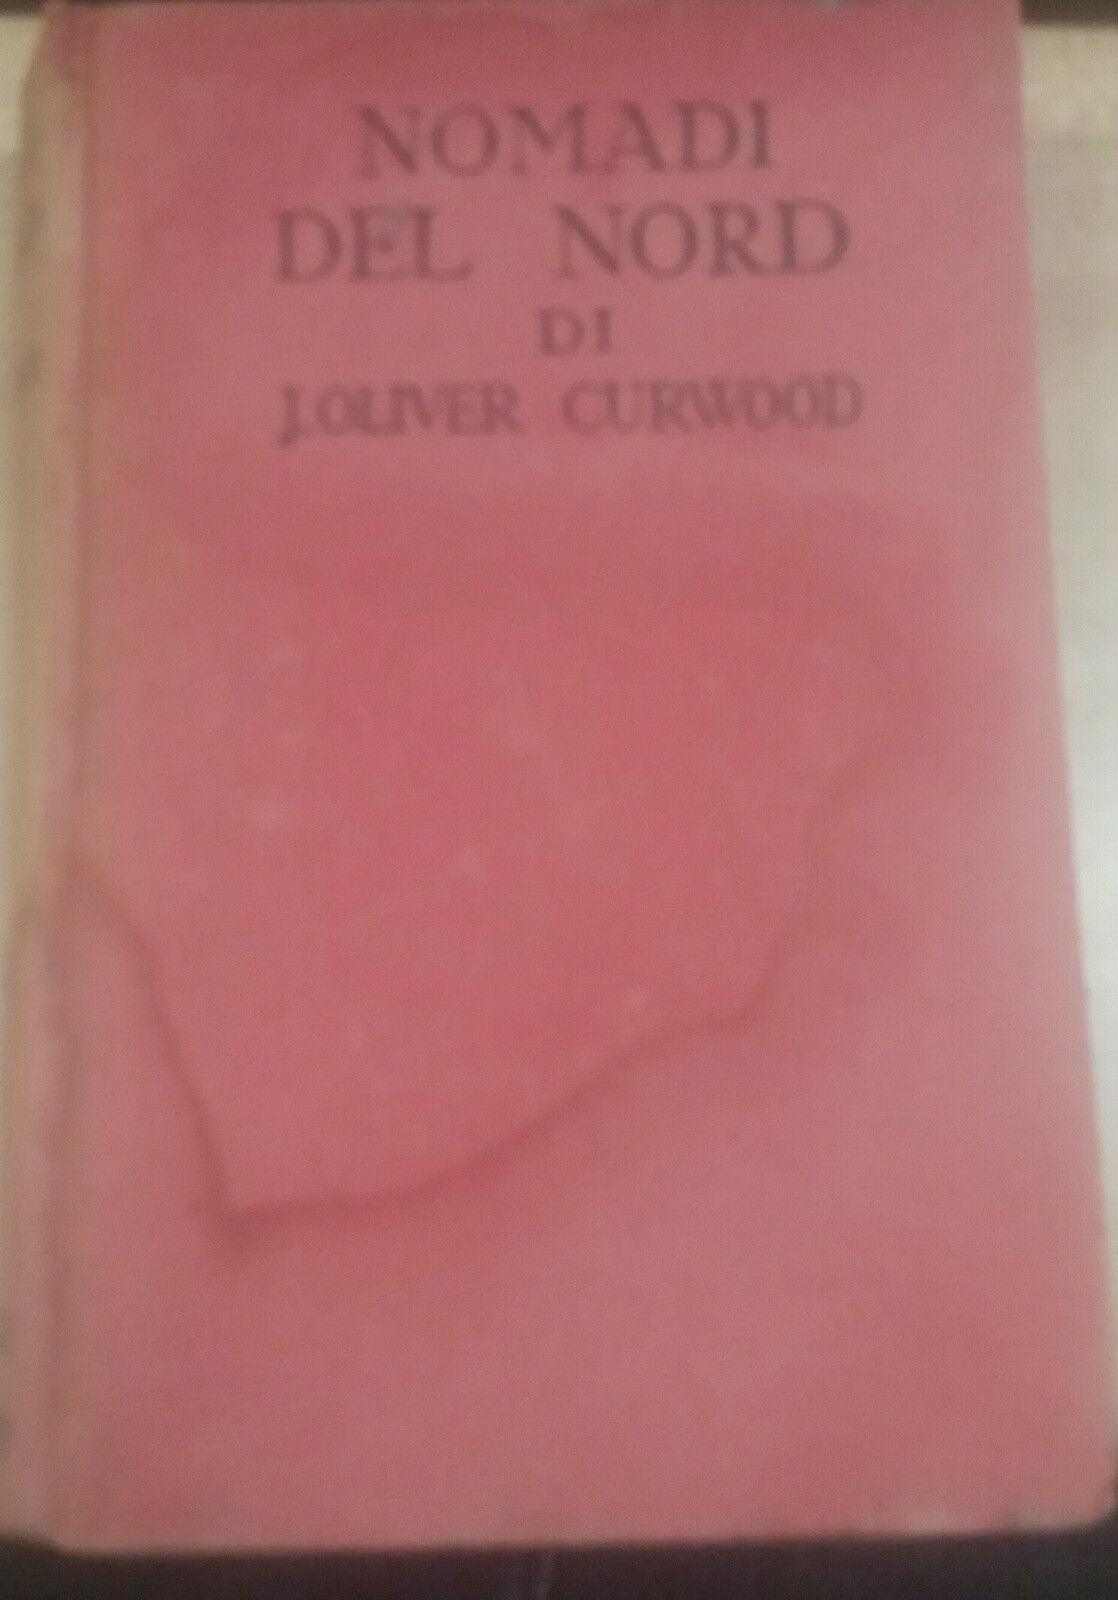 NOMADI DEL NORD - J.OLIVER CURWOOD - SONZOGNO - 1930 - M